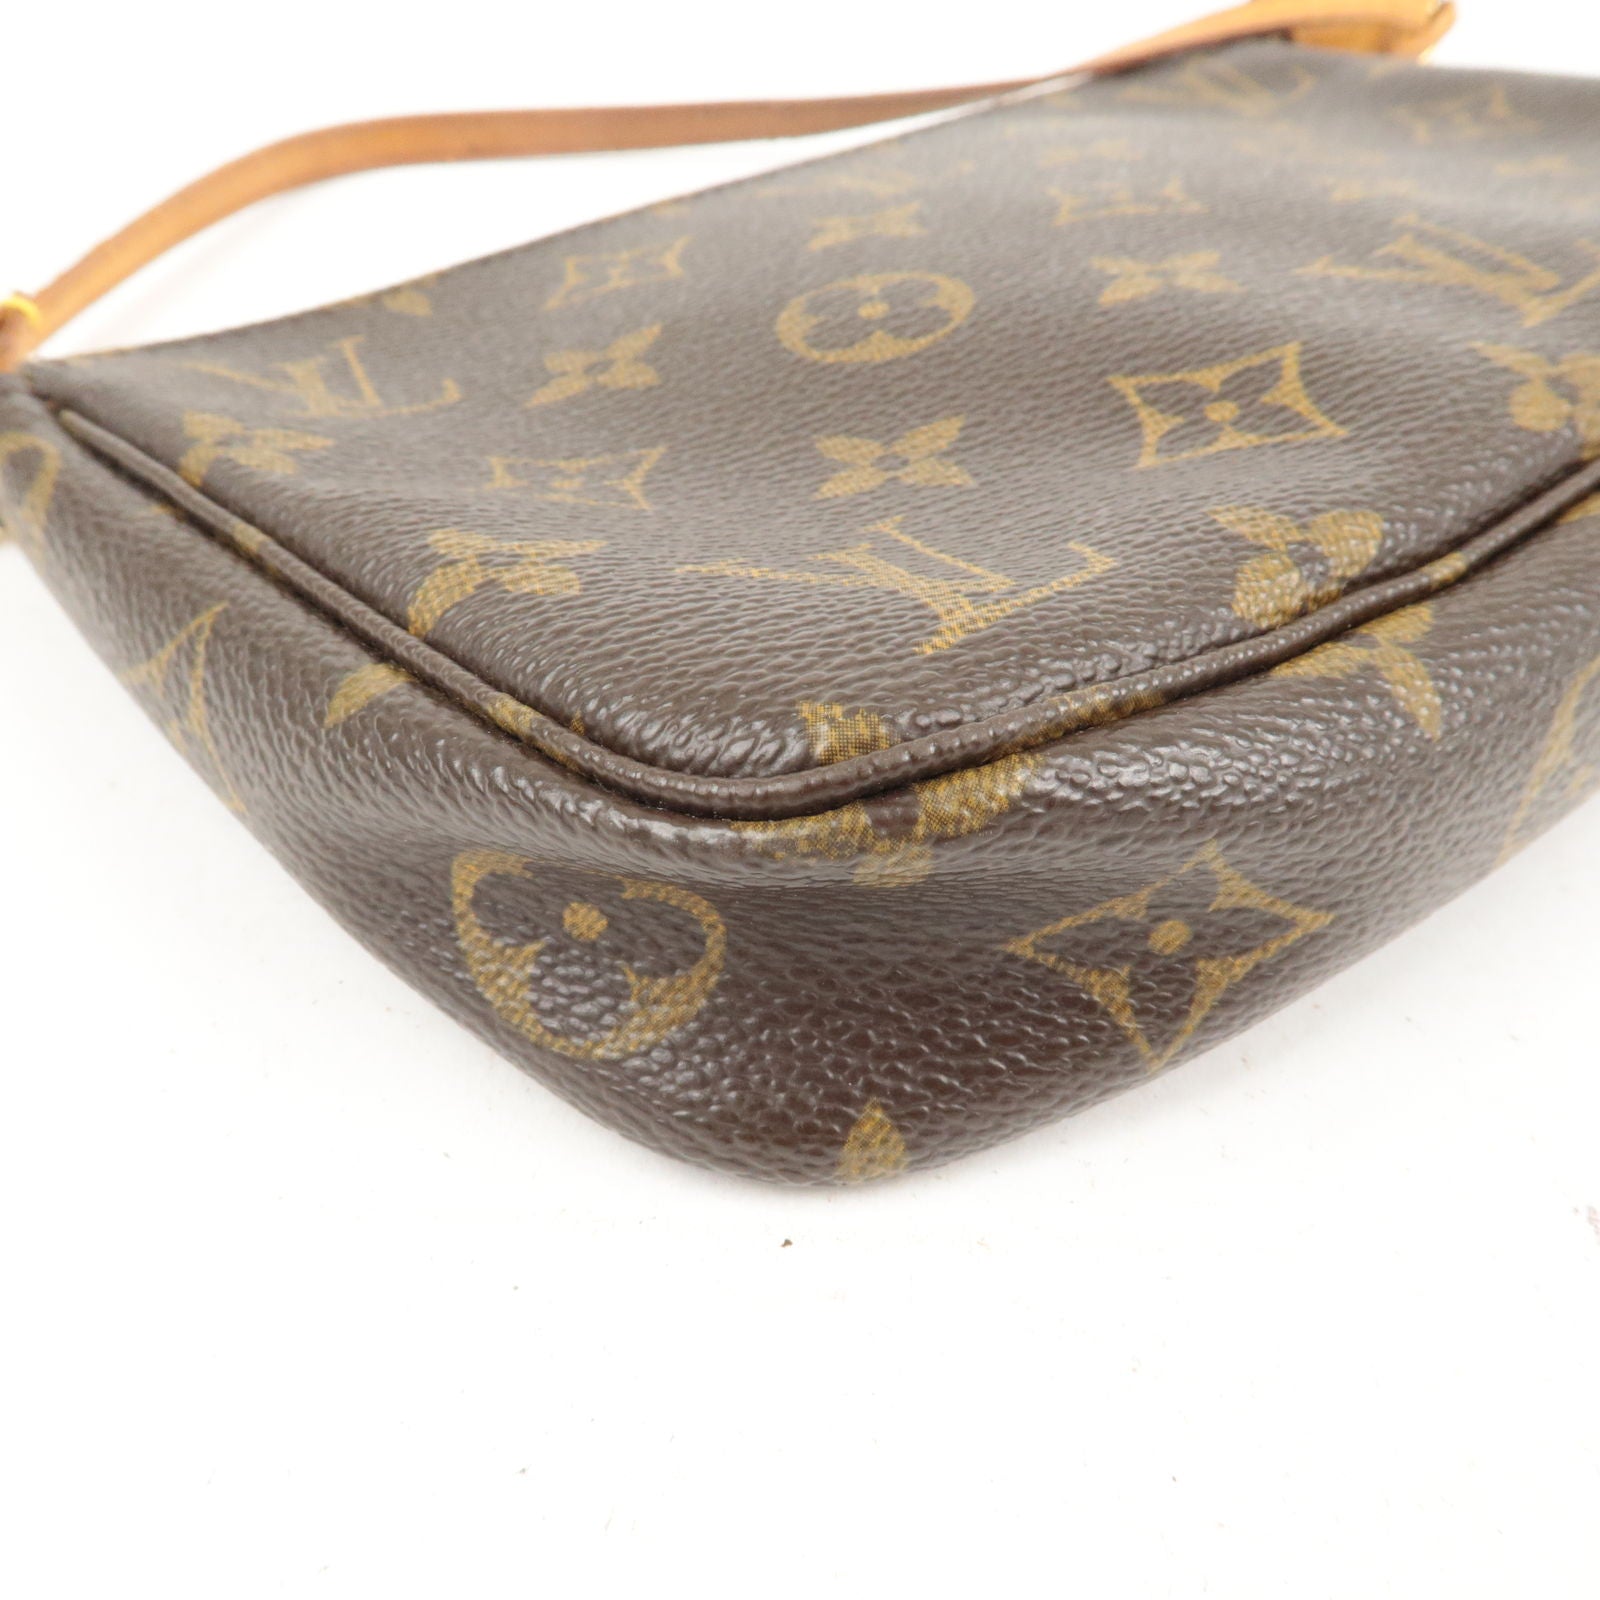 Louis Vuitton Pochette Cite Monogram Canvas Hand Bag